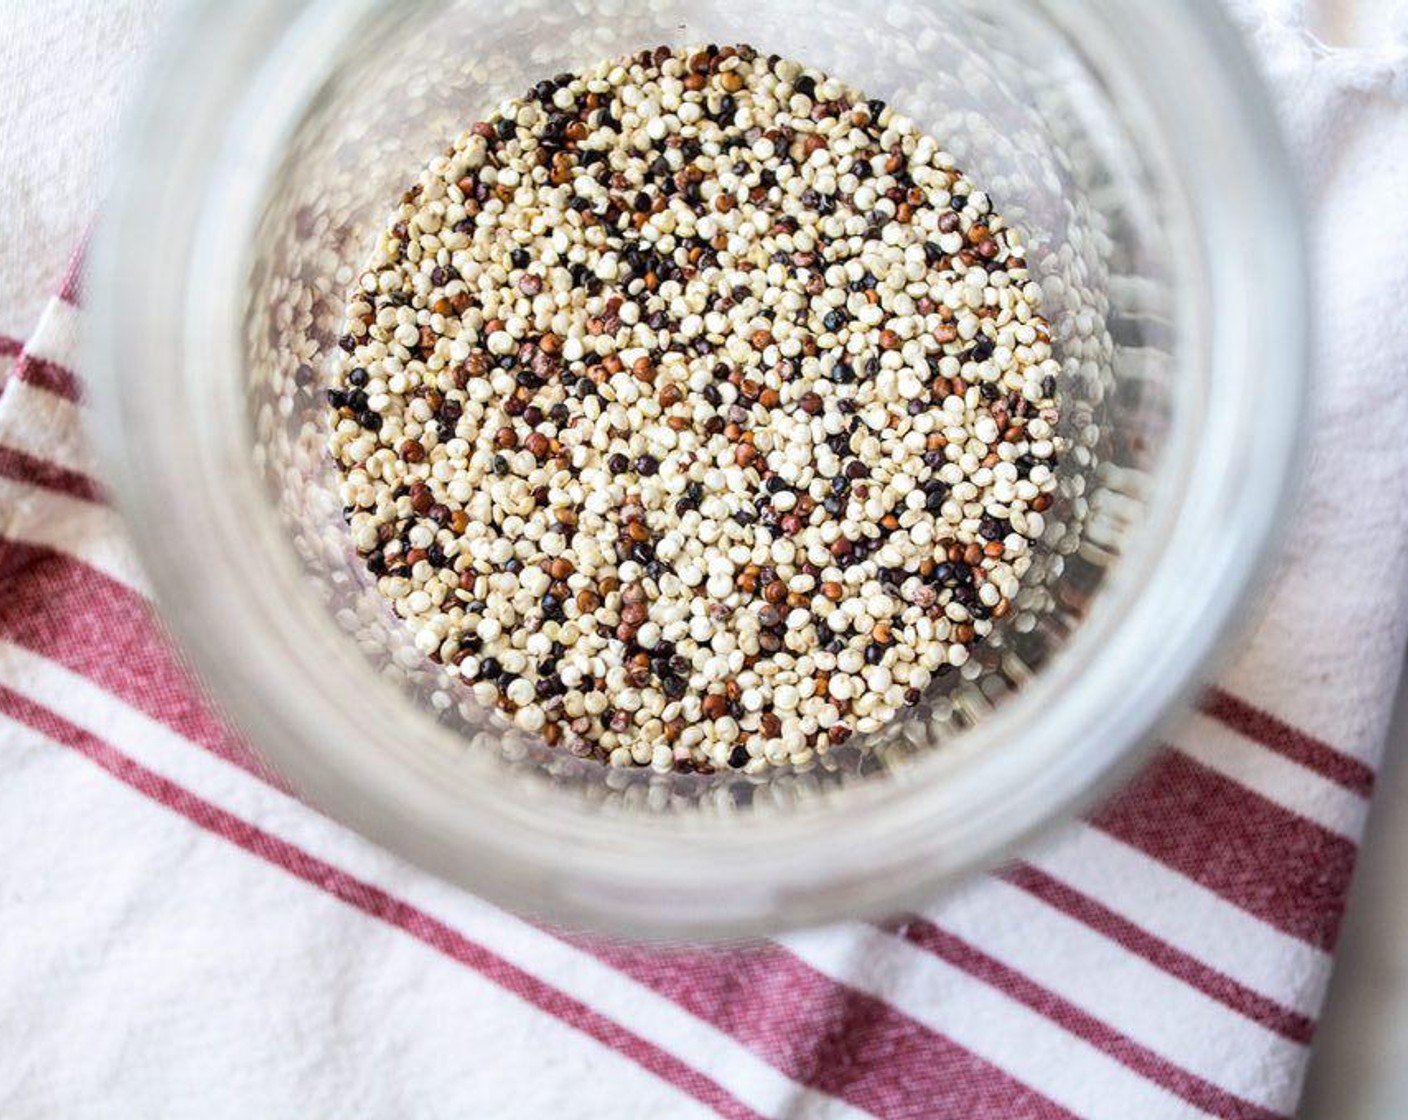 Schritt 2 Quinoa (4 Esslöffel) gründlich spülen, um das Saponin zu entfernen. Dazu die ungekochte Quinoa in eine Schüssel geben, mit sauberem Wasser auffüllen und einige Minuten einweichen lassen. Einen Schneebesen verwenden, um die Quinoa im Wasser zu bewegen, dann das Wasser abseihen und mit frischem Wasser abspülen.